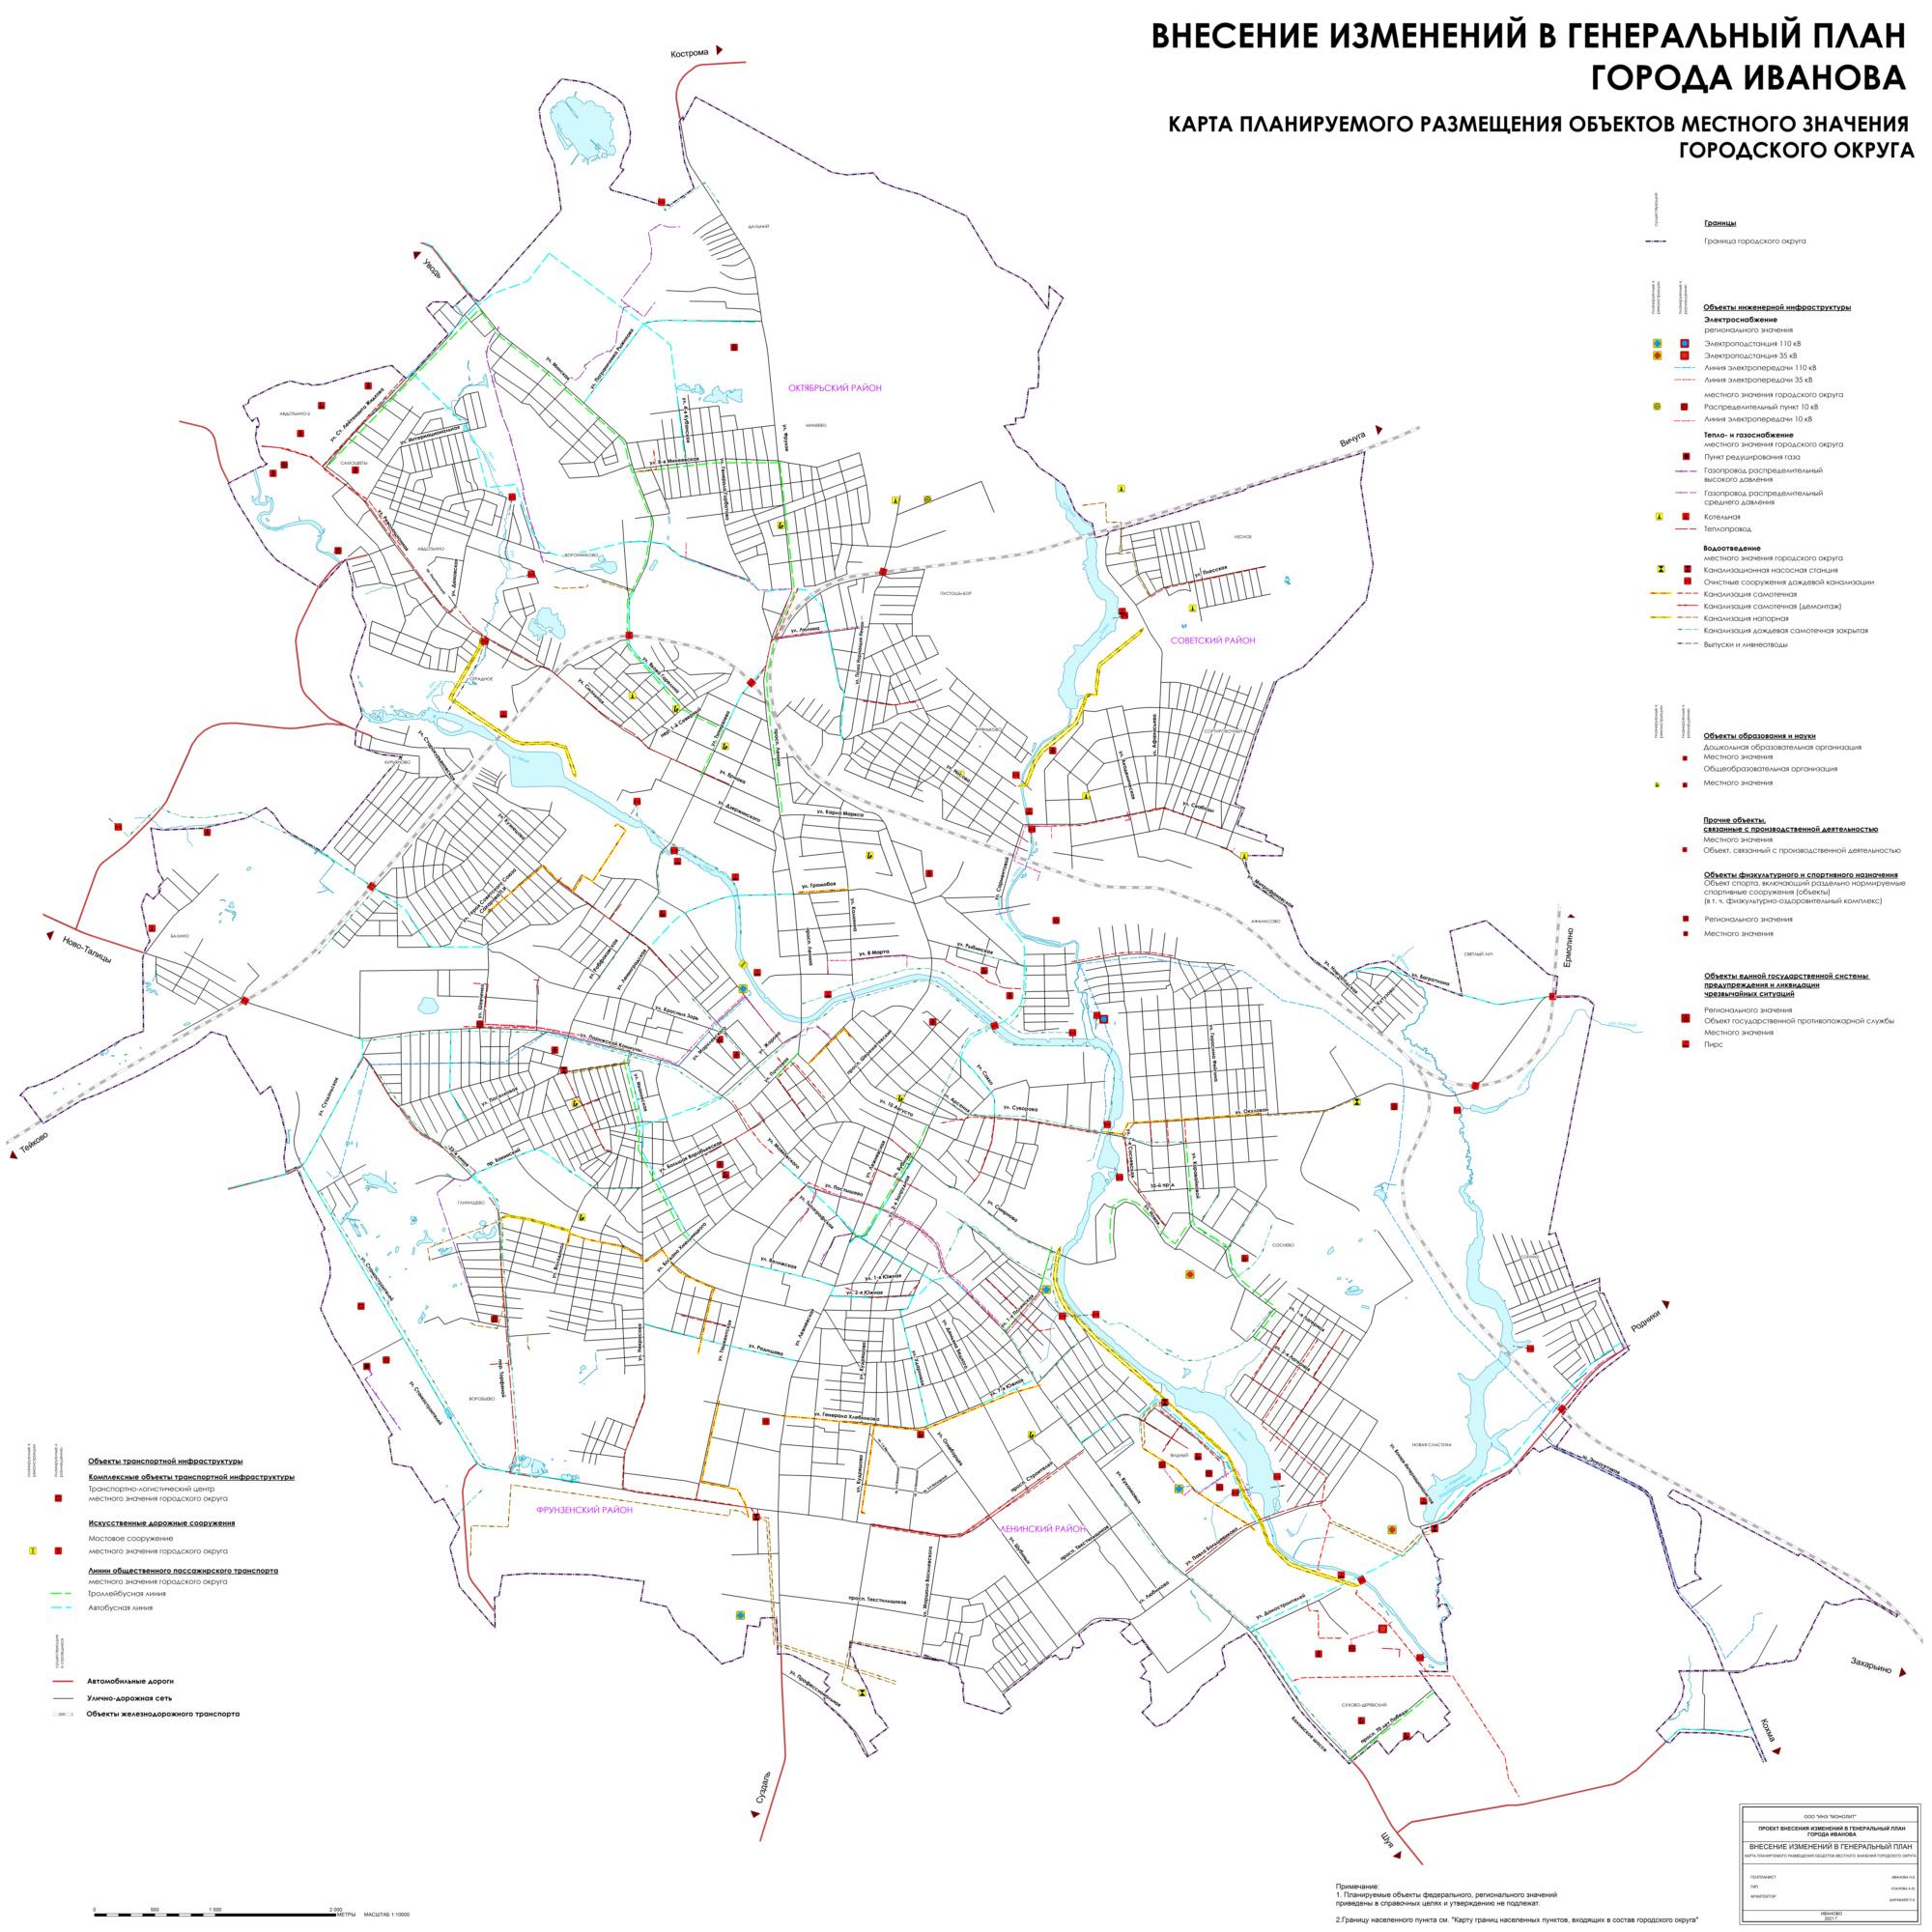 Карта планируемого размещения объектов местного значения городского округа